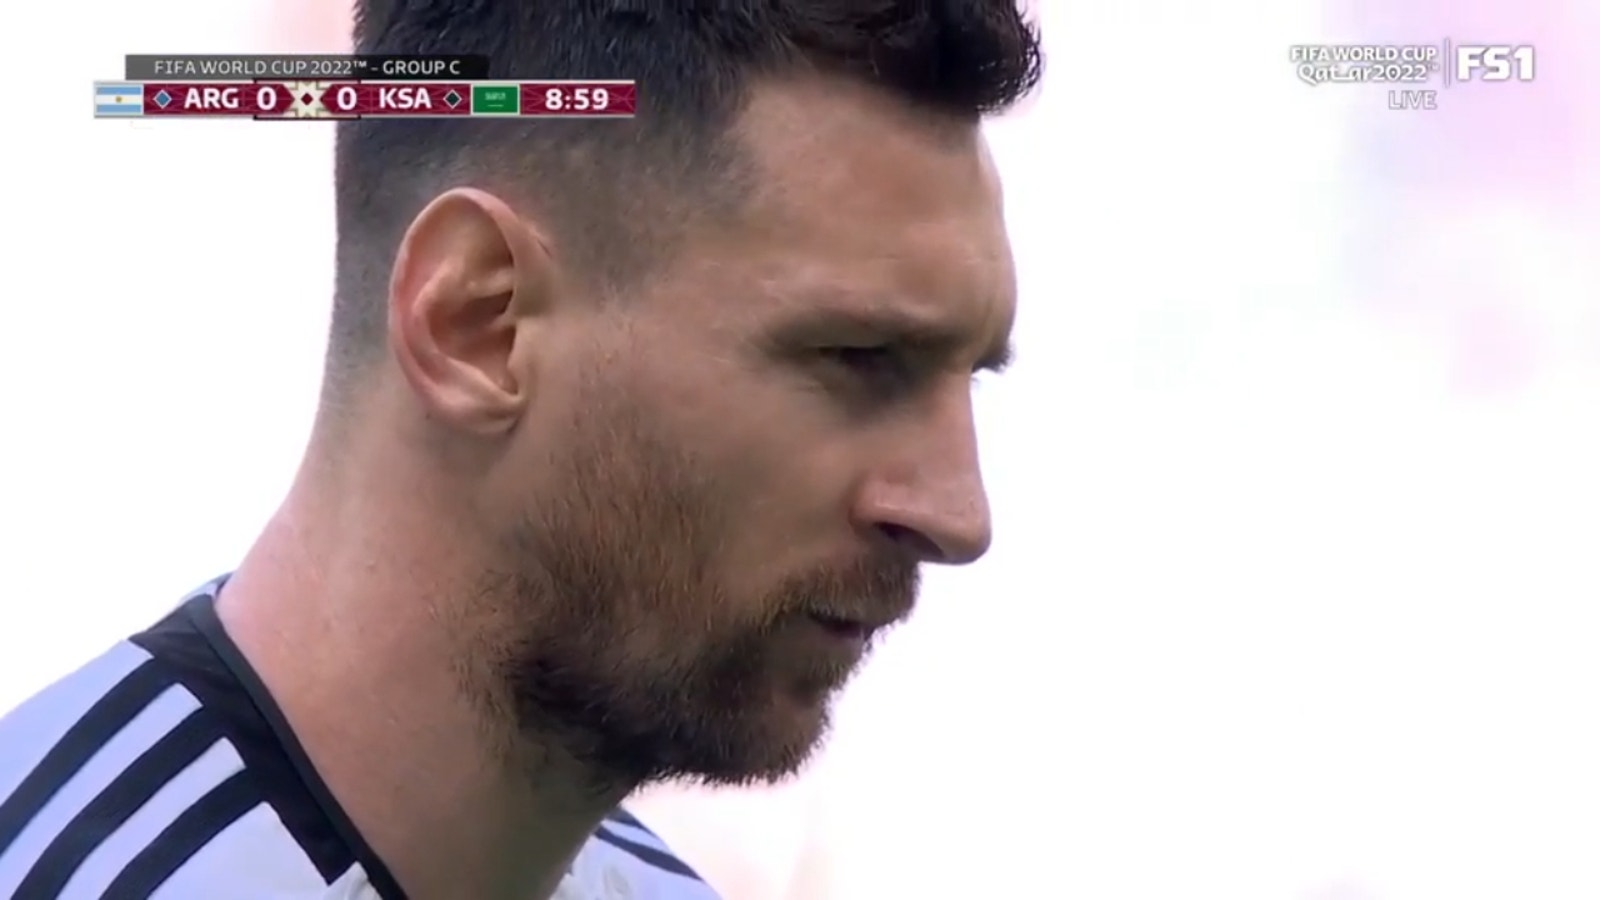 Lionel Messi anotó un penal en el minuto 10 para darle a Argentina una ventaja de 1-0 sobre Arabia Saudita.